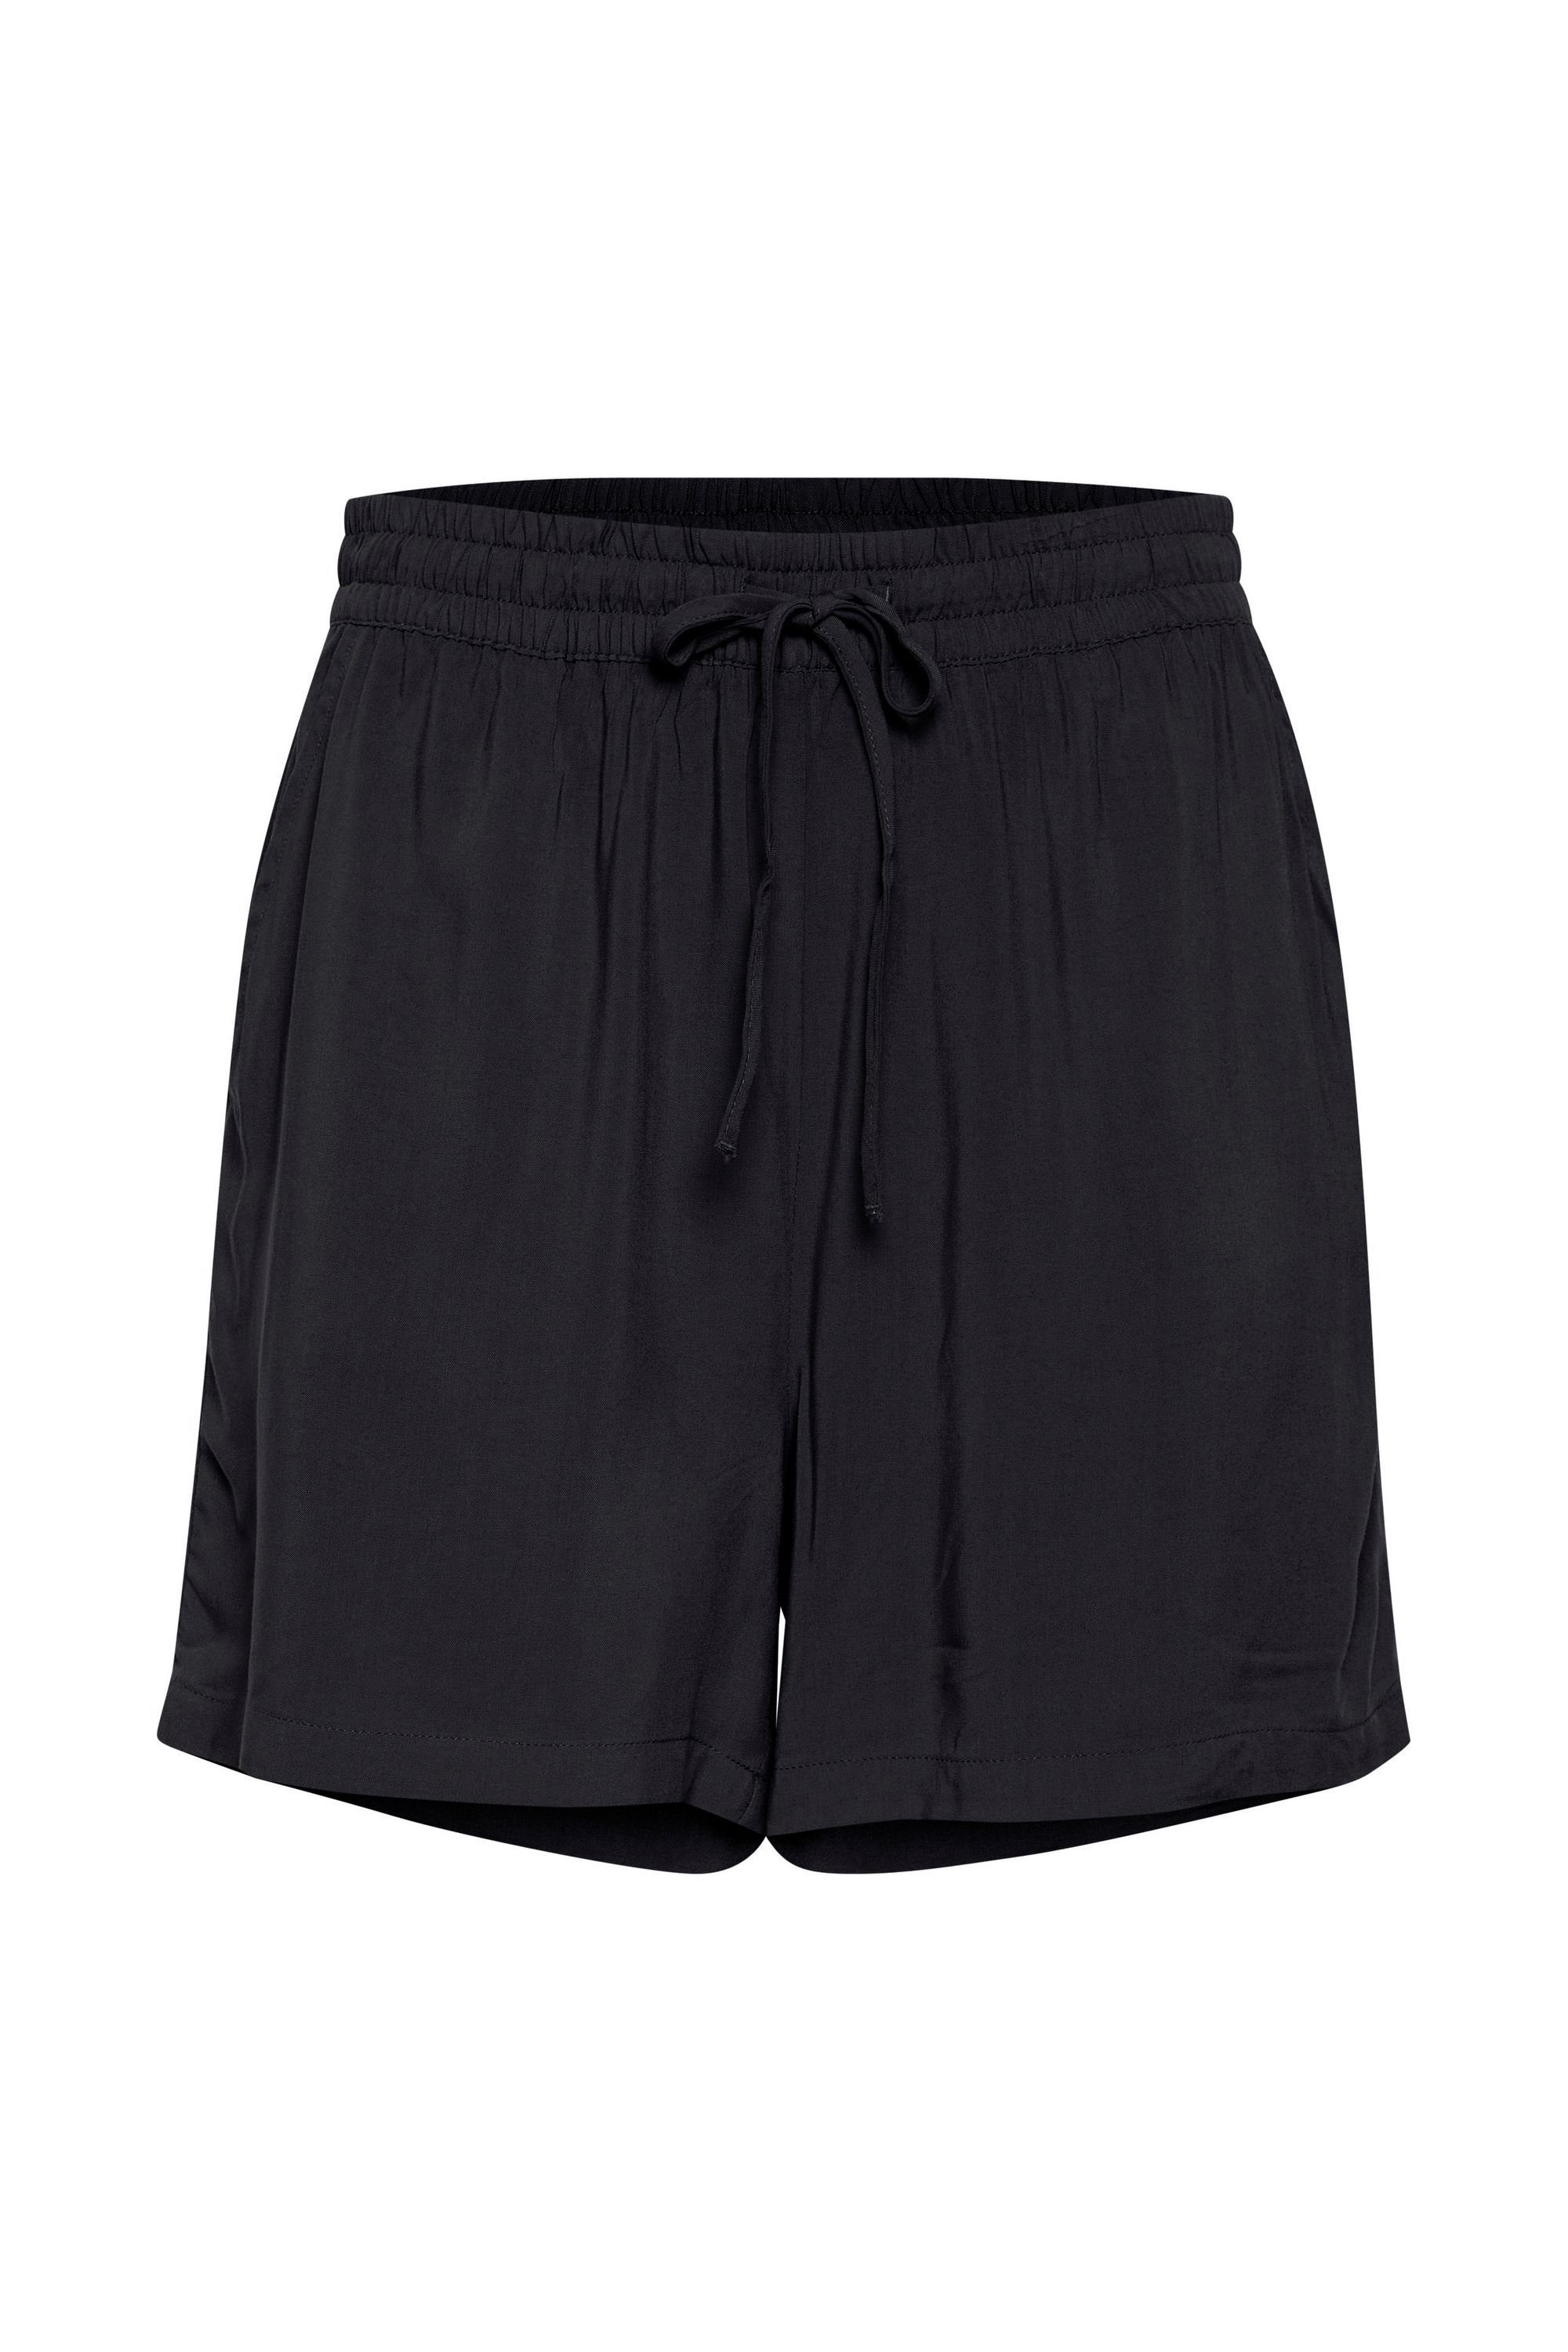 - Luftige (200451) SHORTS 20809730 b.young BYMMJOELLA mit Black Shorts Shorts Muster